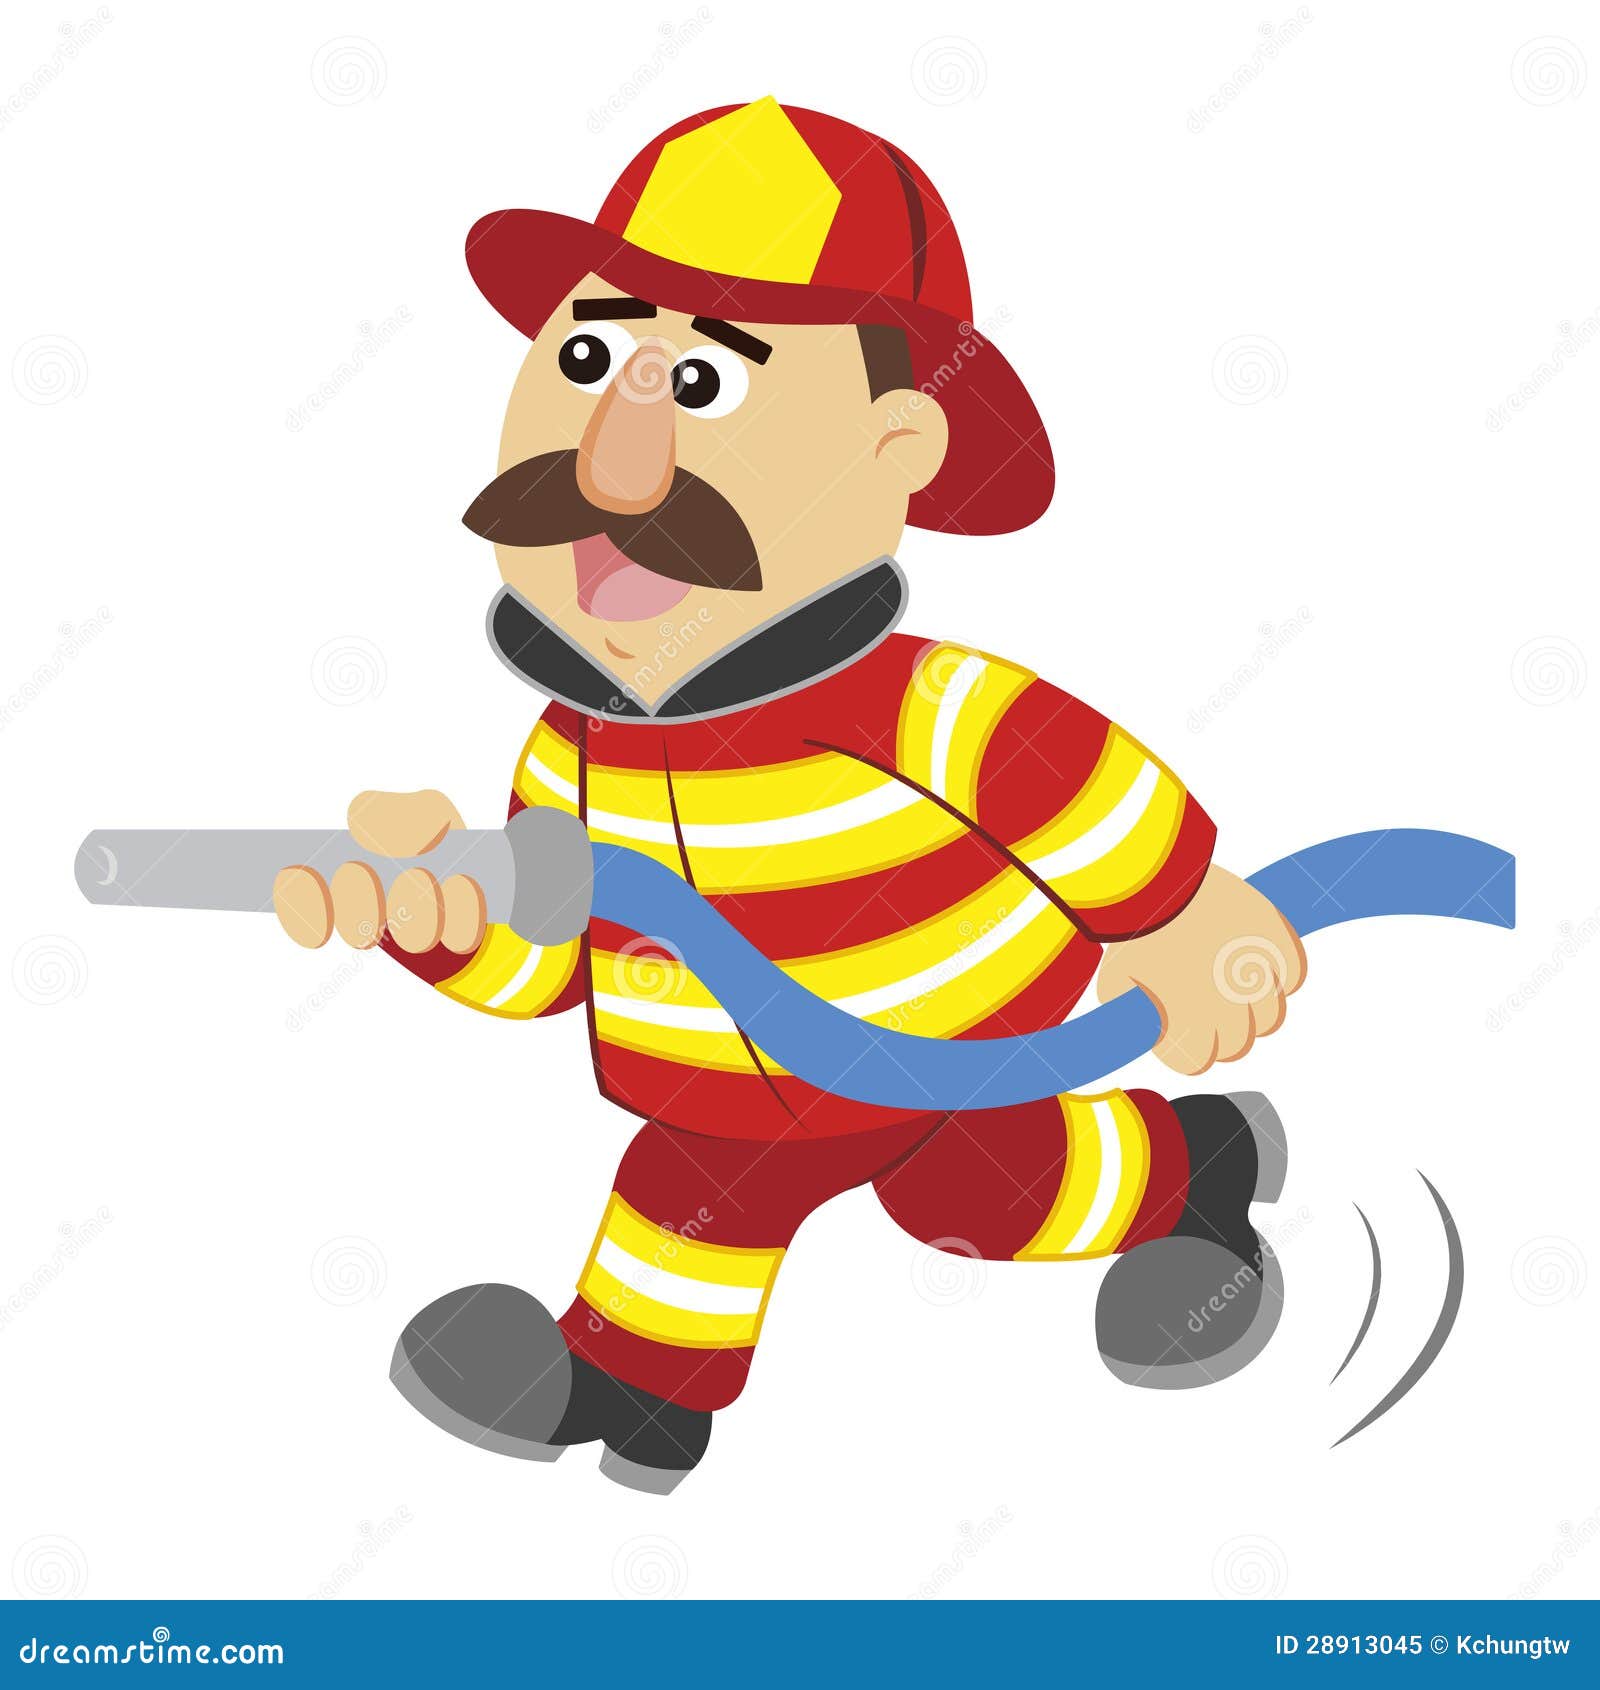 illustration-cartoon-fireman-28913045.jpg